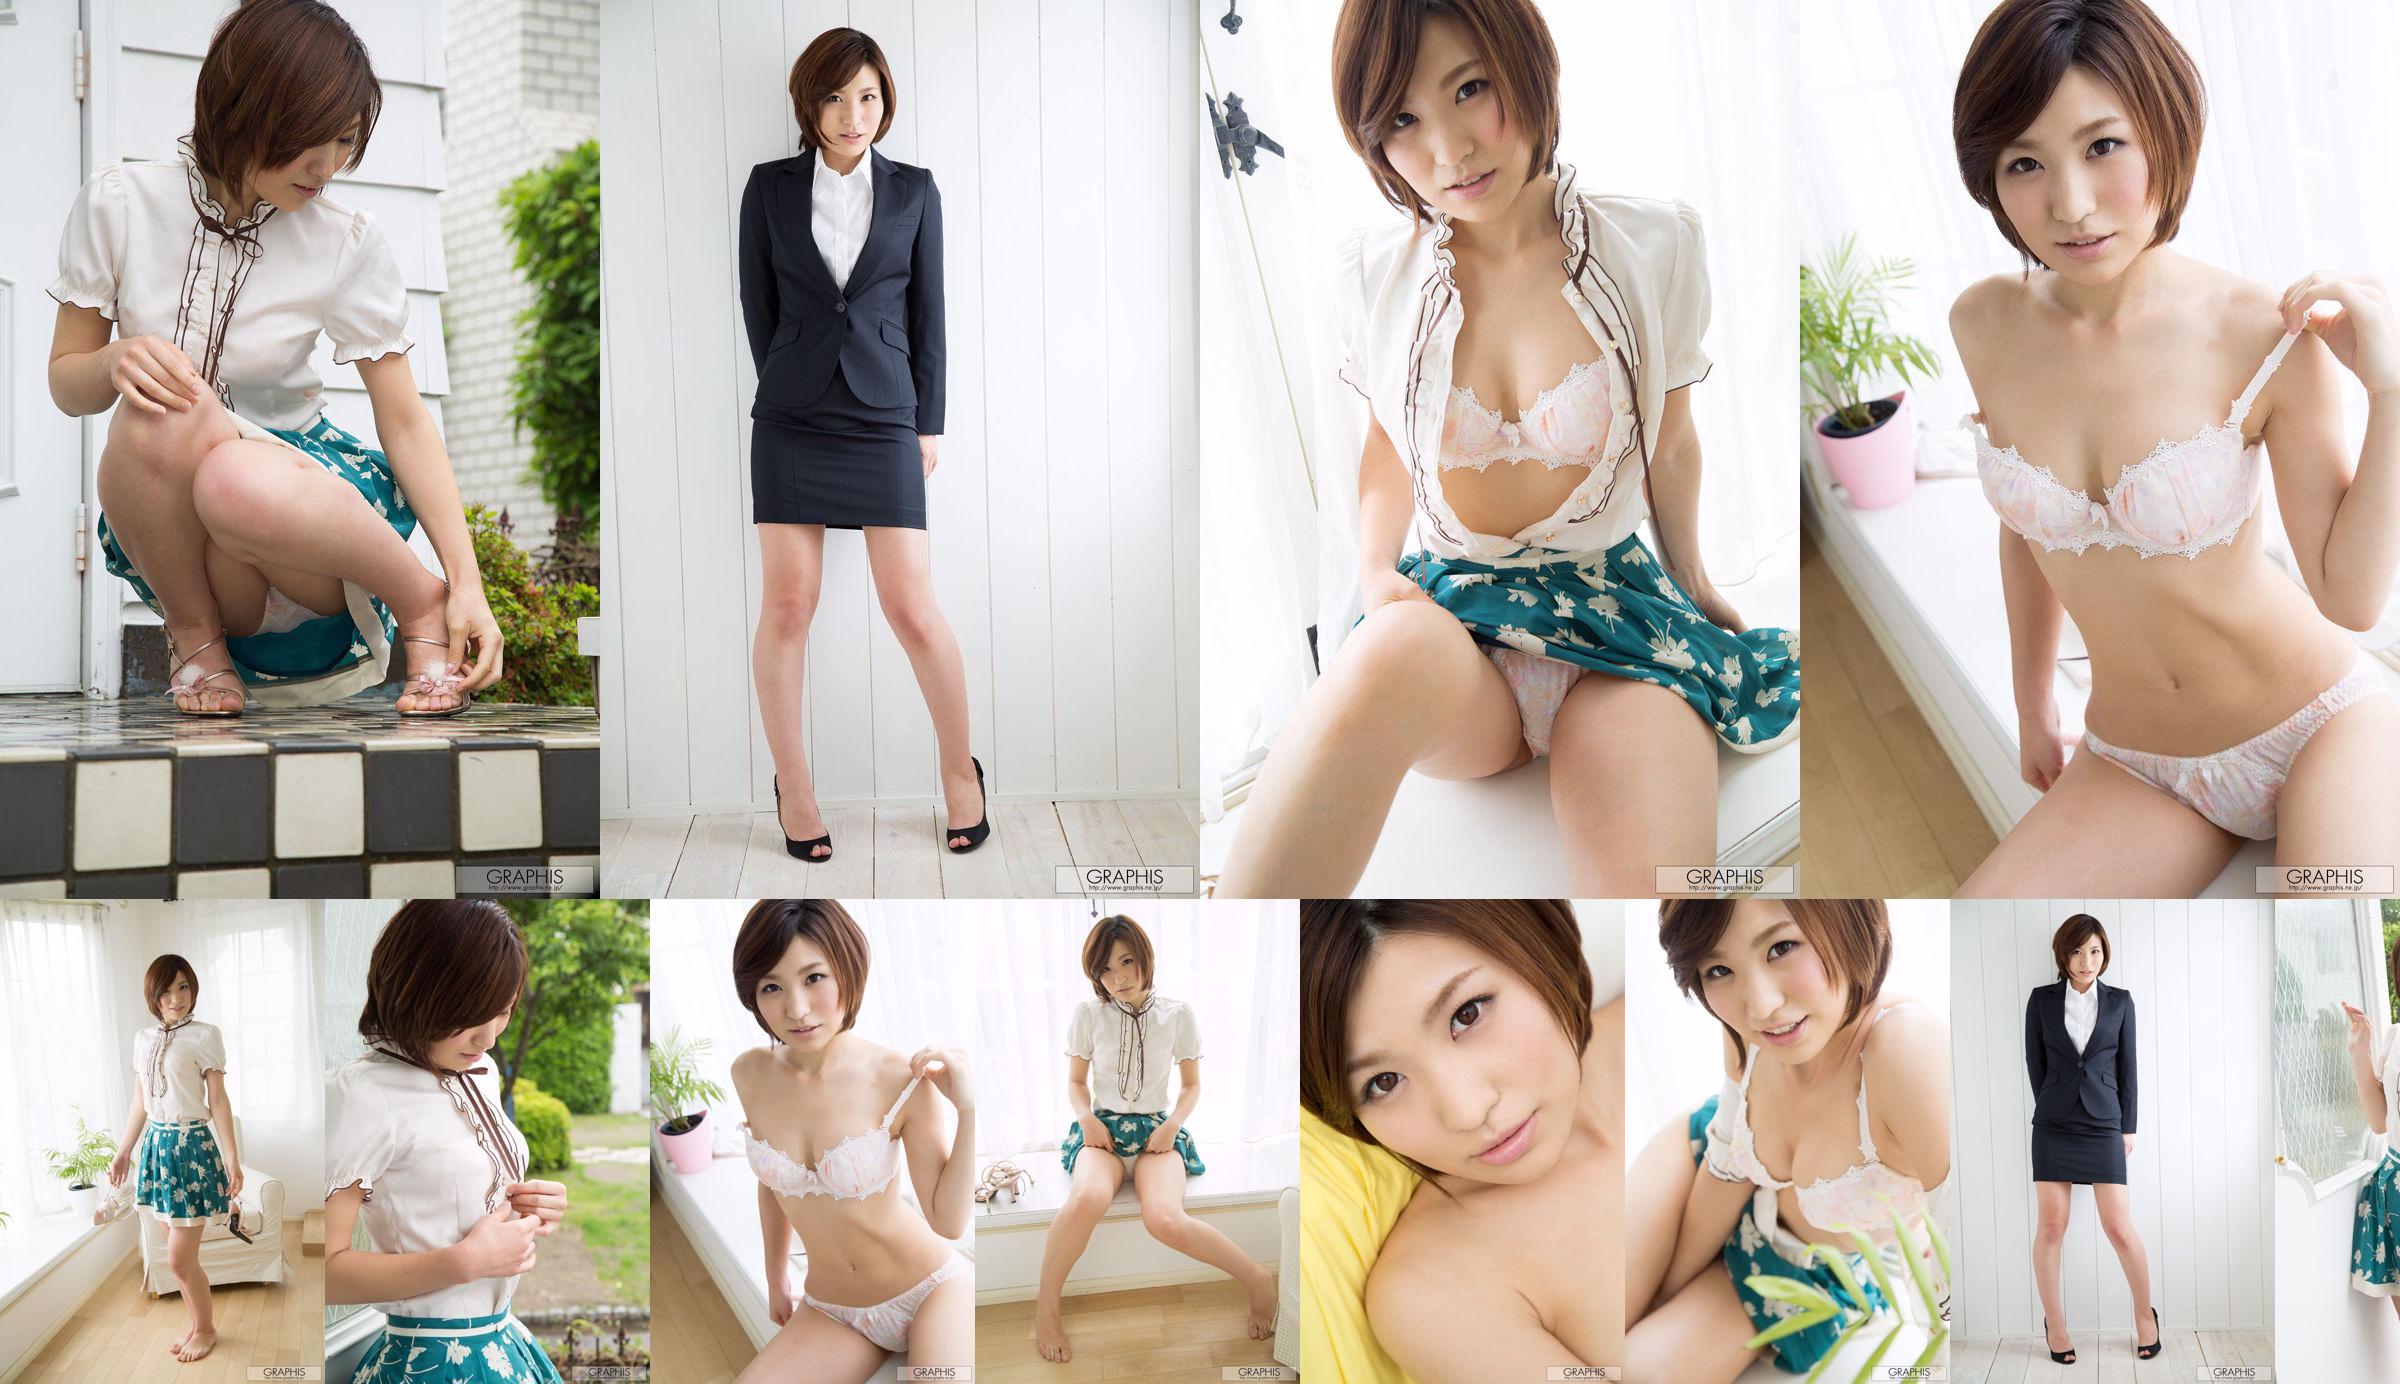 Minami Natsuki / Minami Natsuki [Graphis] Primer fotograbado, primer despegue, hija No.43e464 Página 2